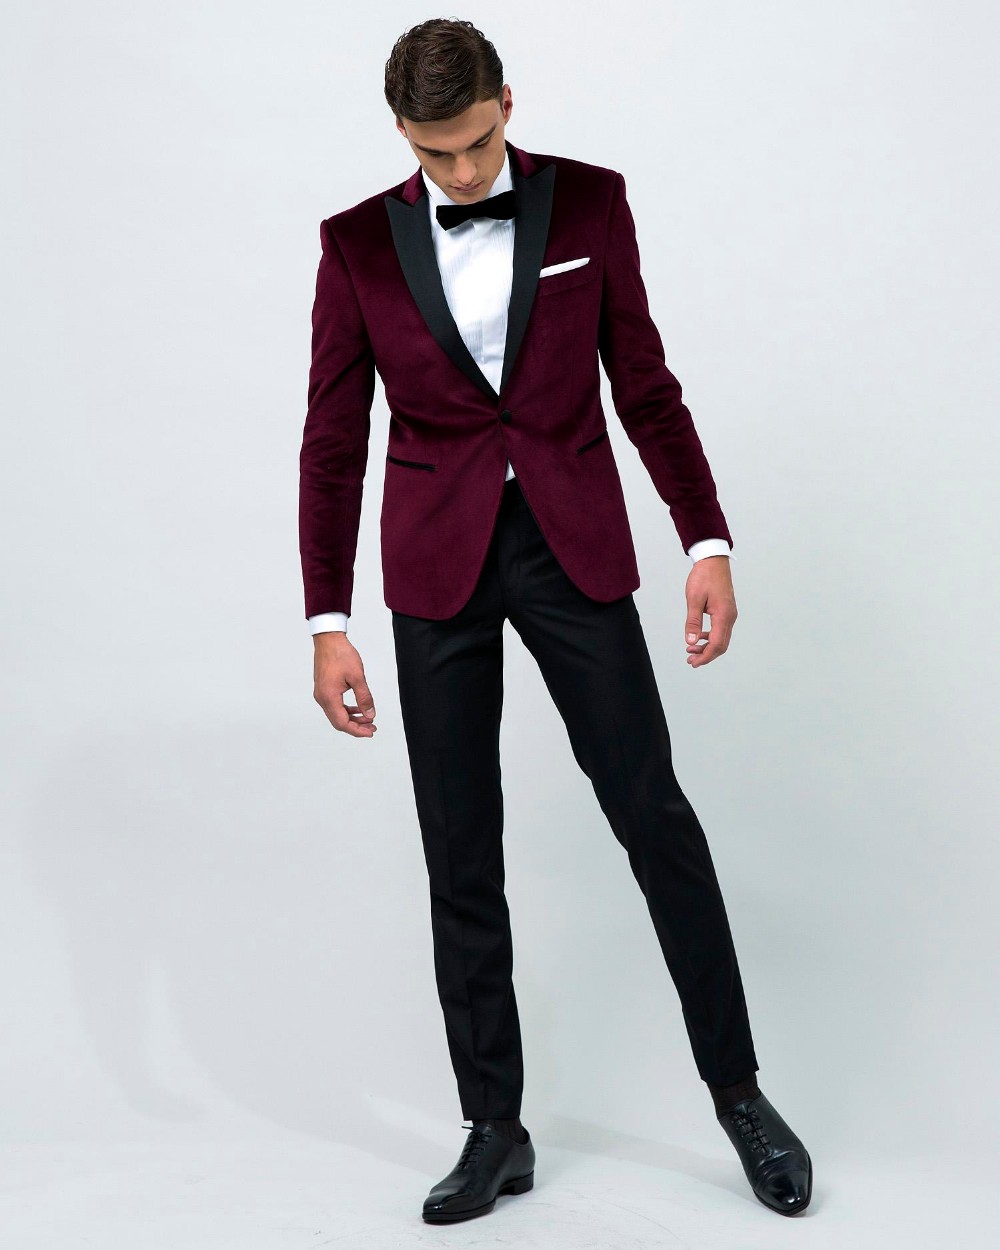 Airtailors vintage Kadife Şarap Kırmızı Tepe Yaka Smokin / erkekler için düğün Suit / Damat özel giyim giymek (ceket + pantolon + yay)